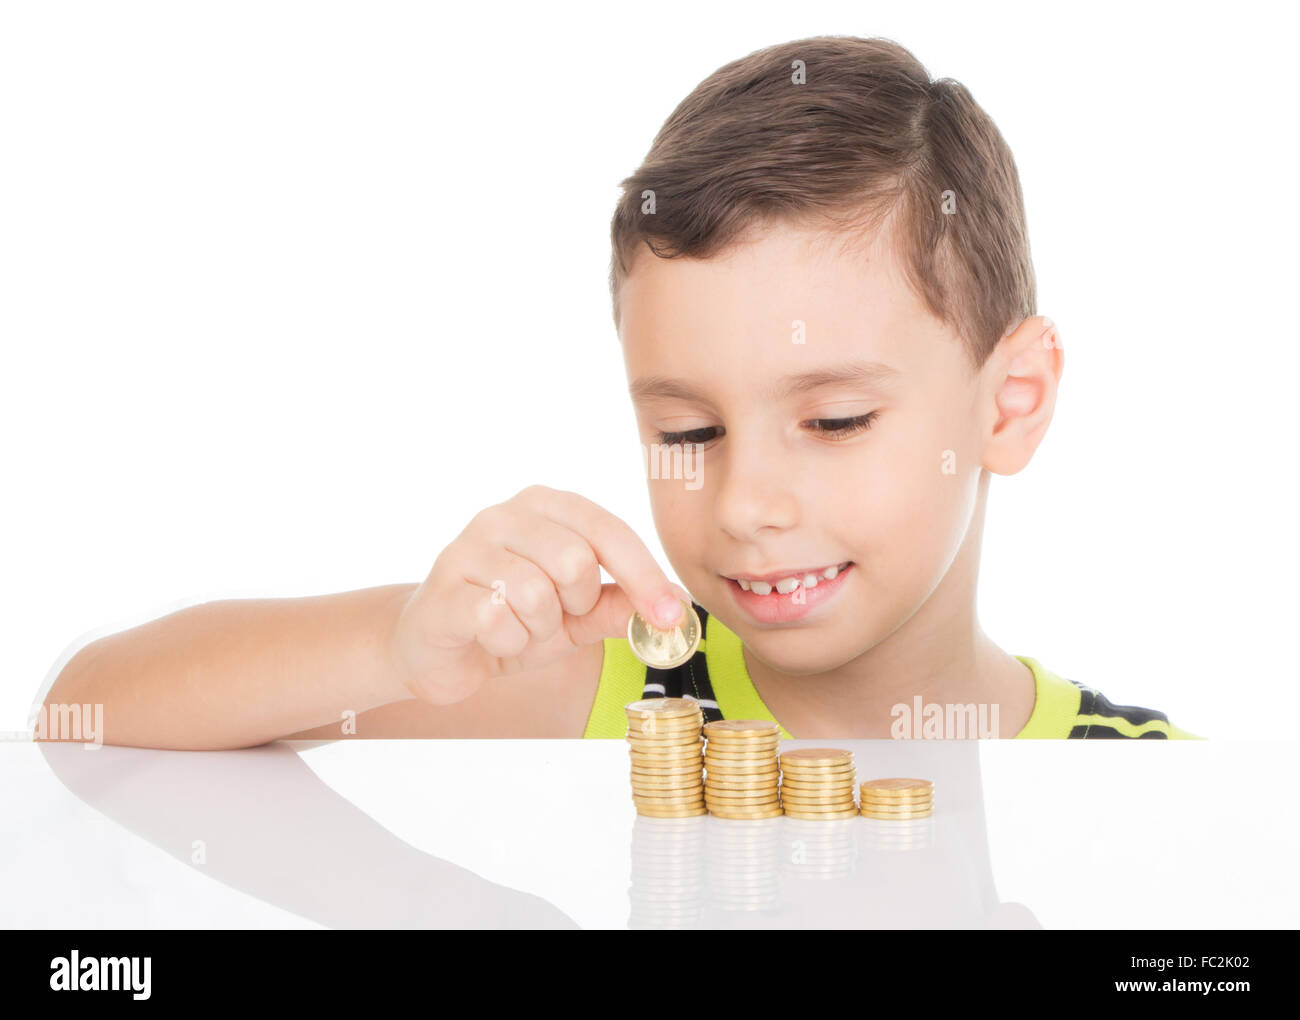 Niño feliz contando sus monedas de oro Foto de stock